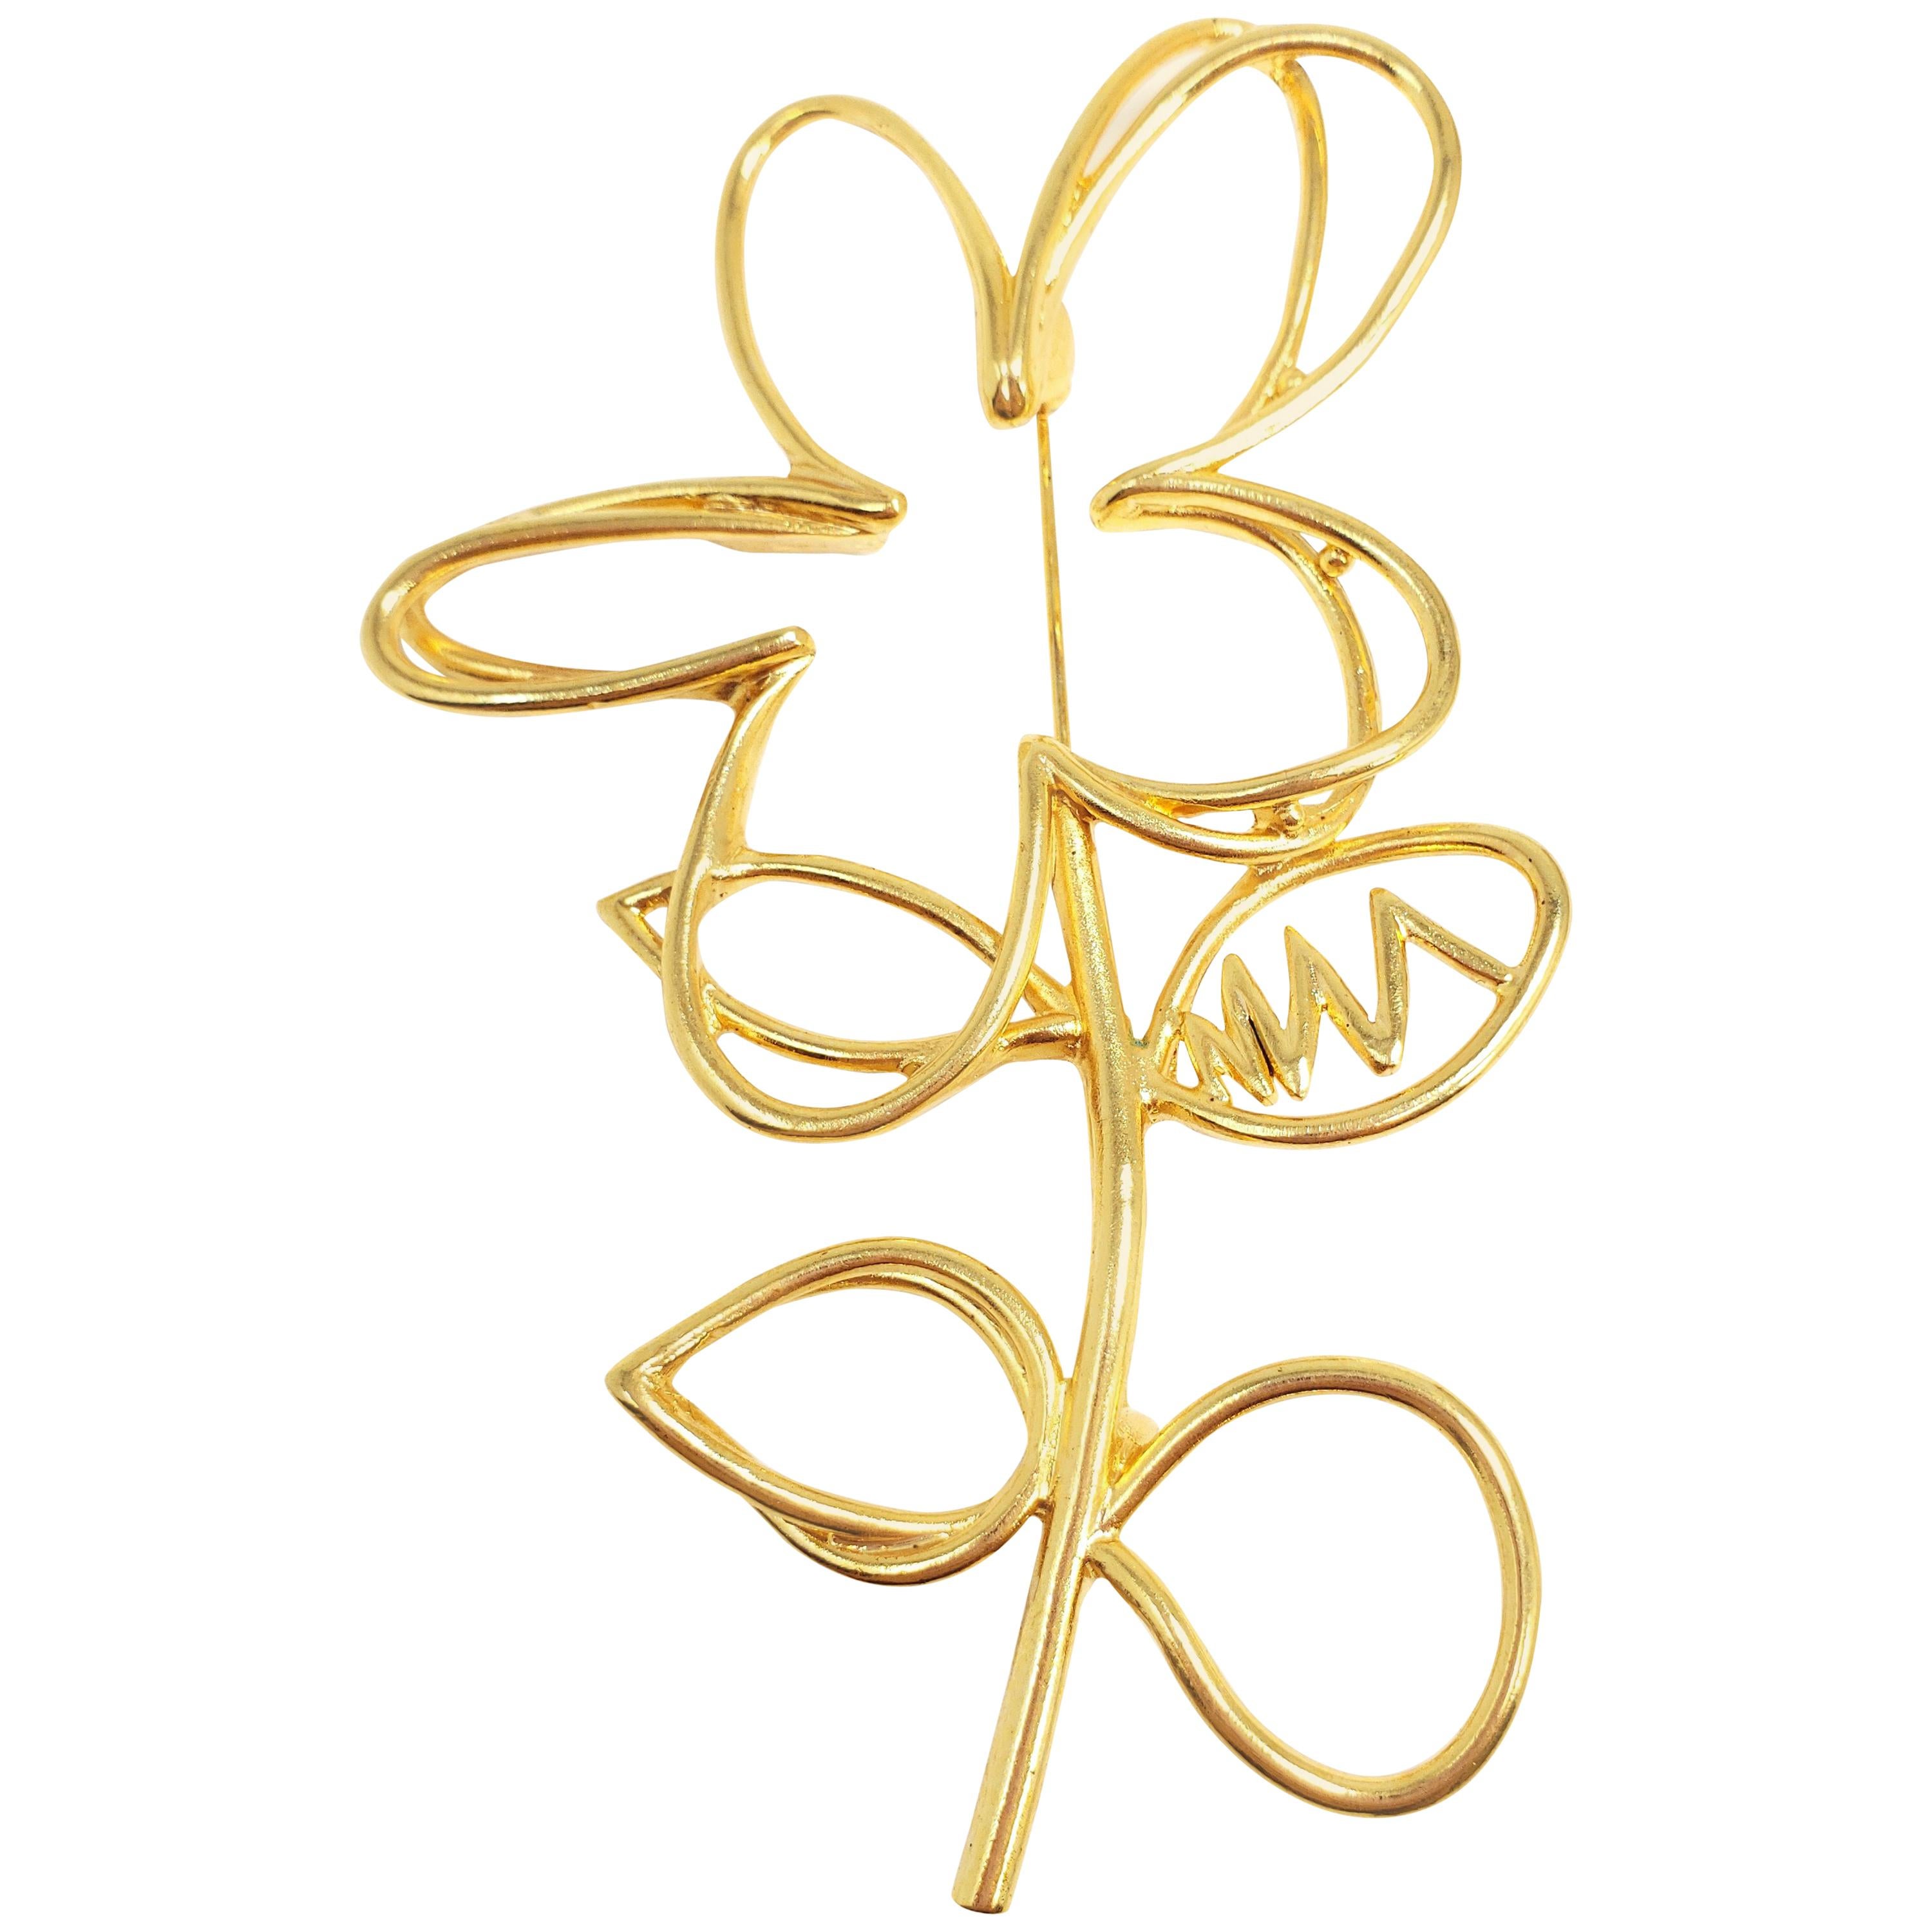 Oscar de la Renta Botanical Scribble Flower Brooch Pin in Gold